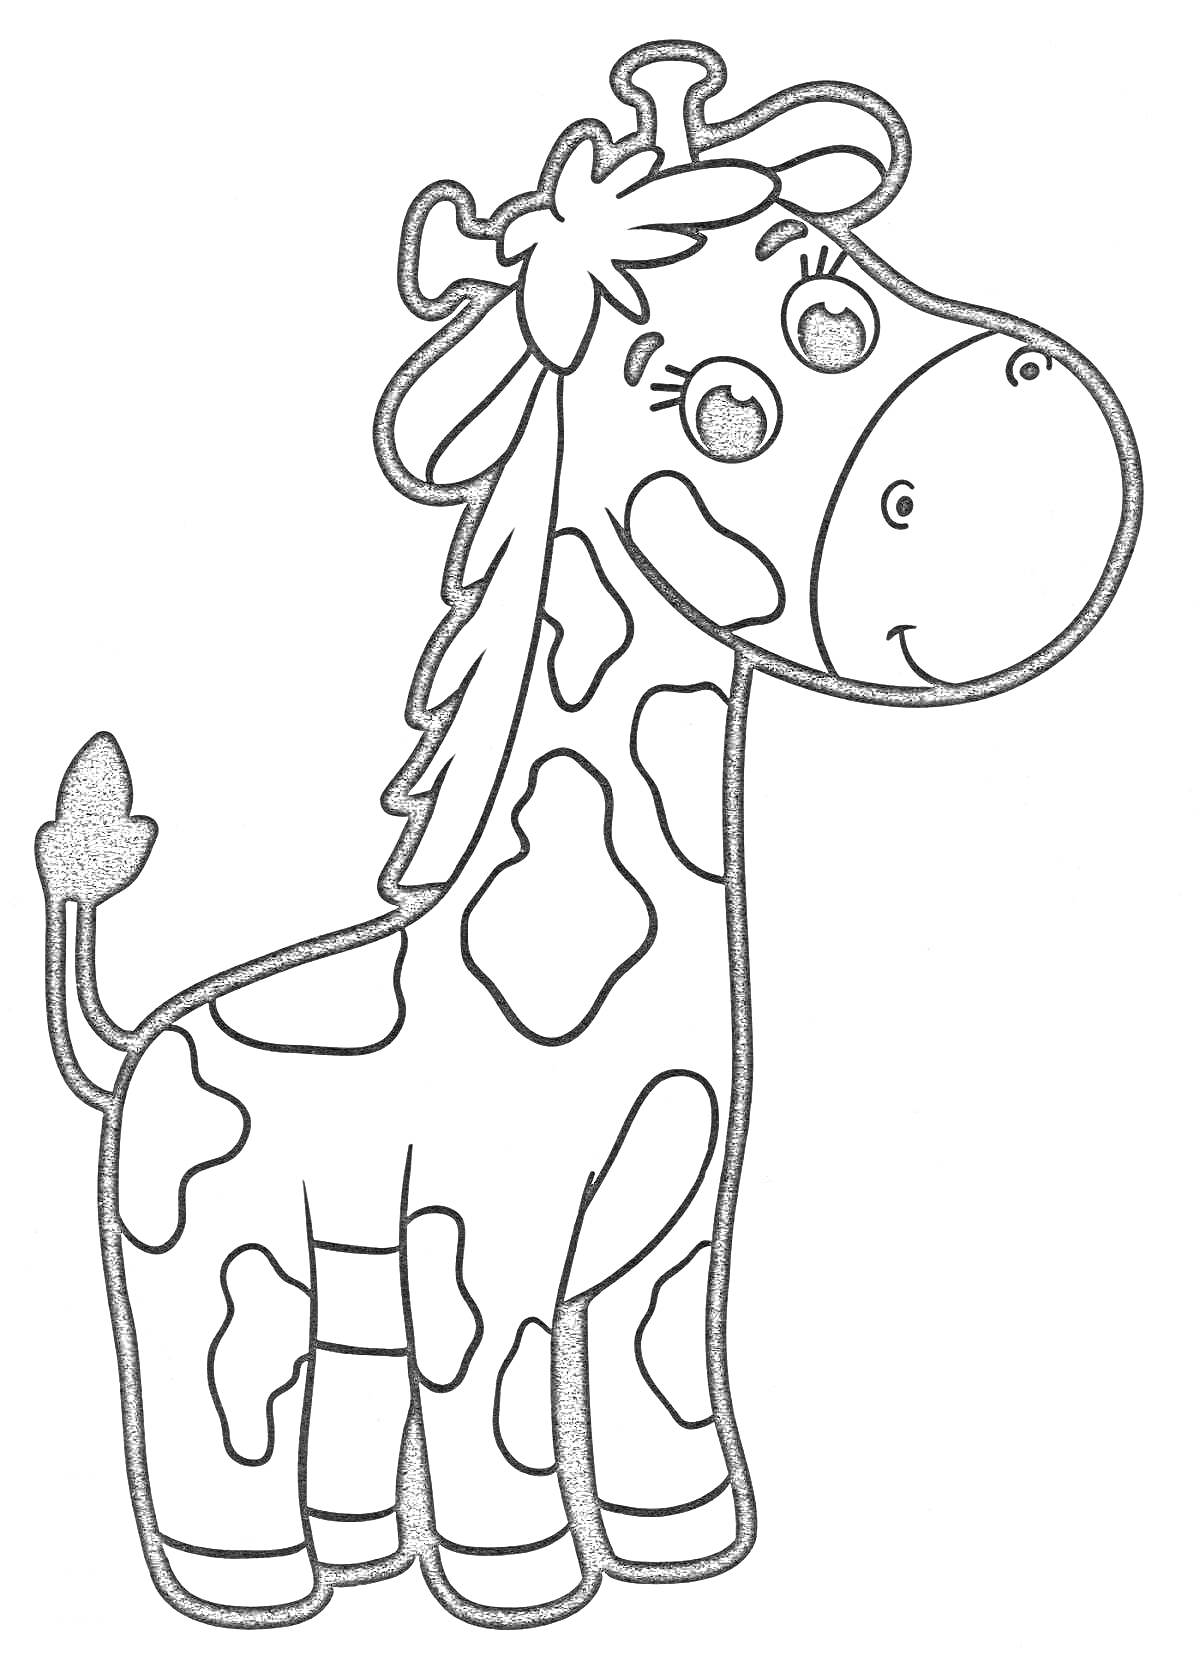 Раскраска Раскраска с улыбающимся жирафом для детей